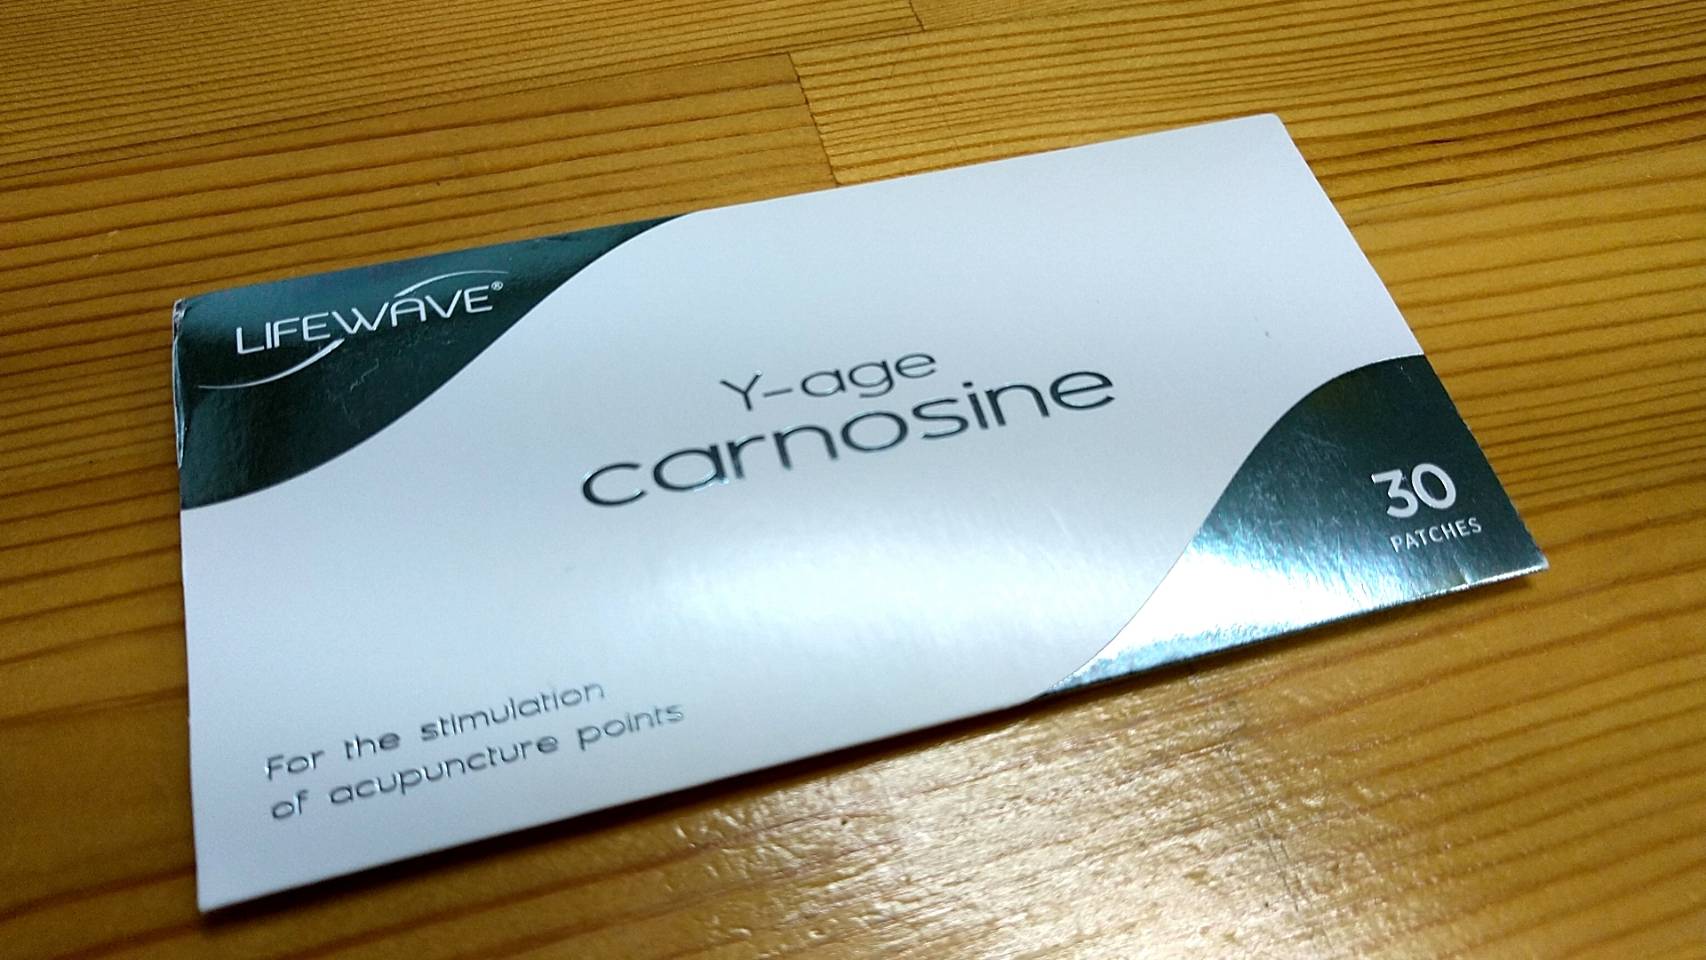 Y-Age Carnosine （カルノシン）のツボ刺激によって、体調に変化がみ 